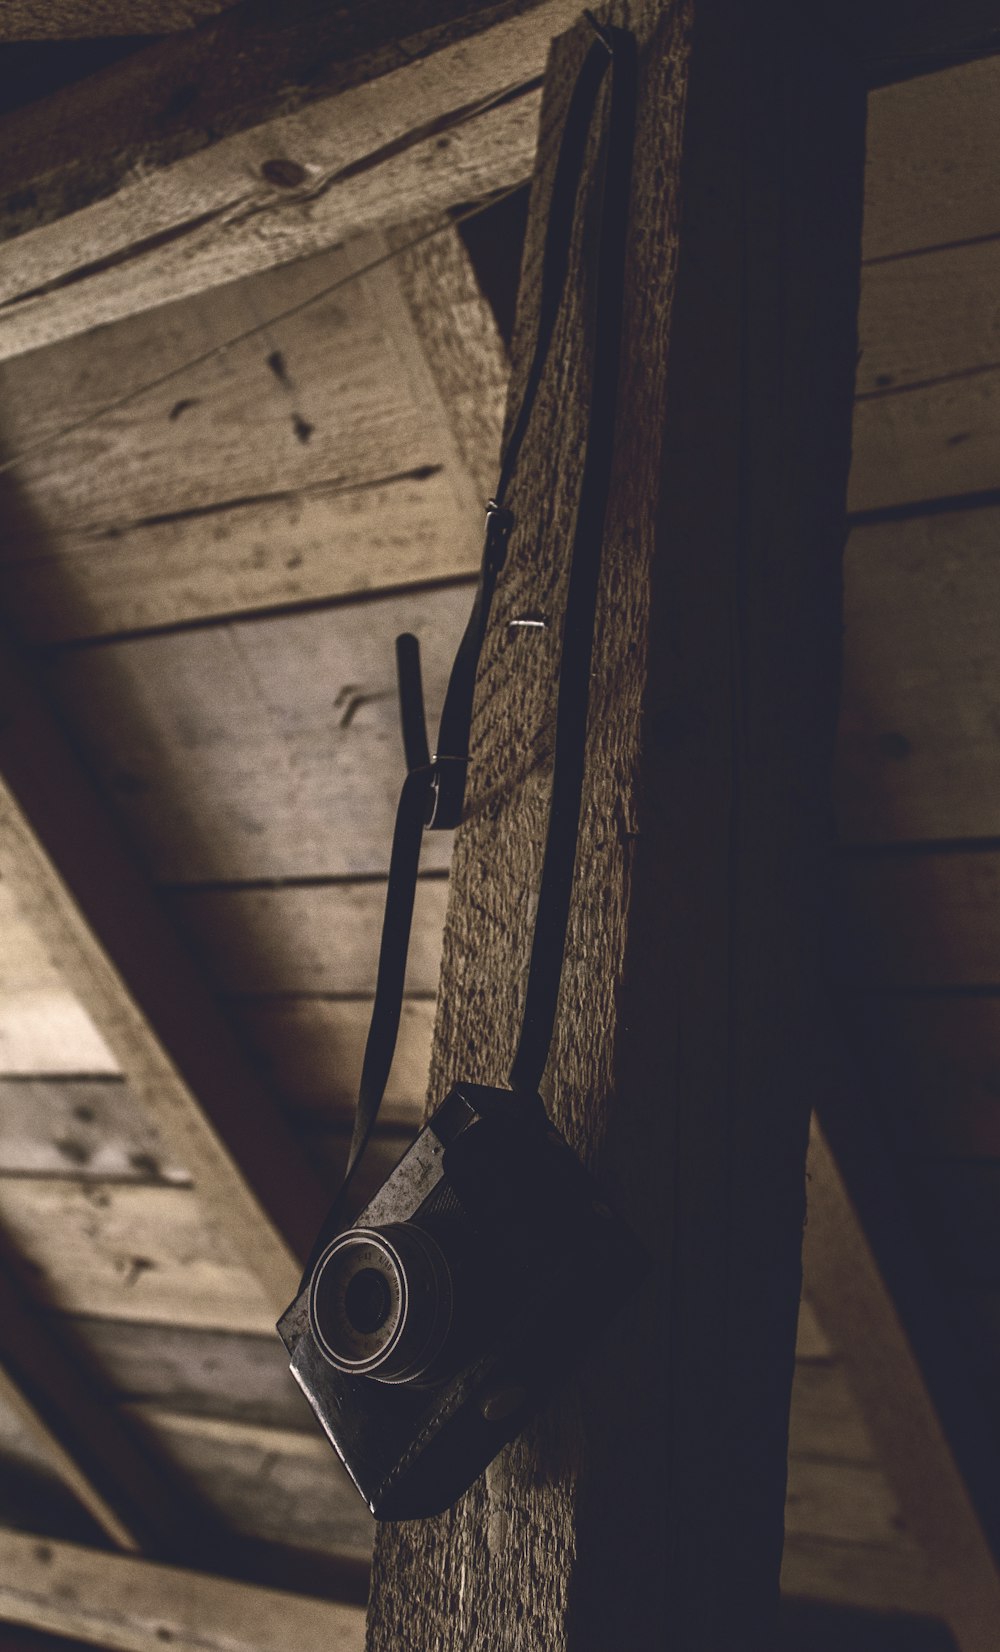 cámara negra de apuntar y disparar colgada de una barra de madera marrón